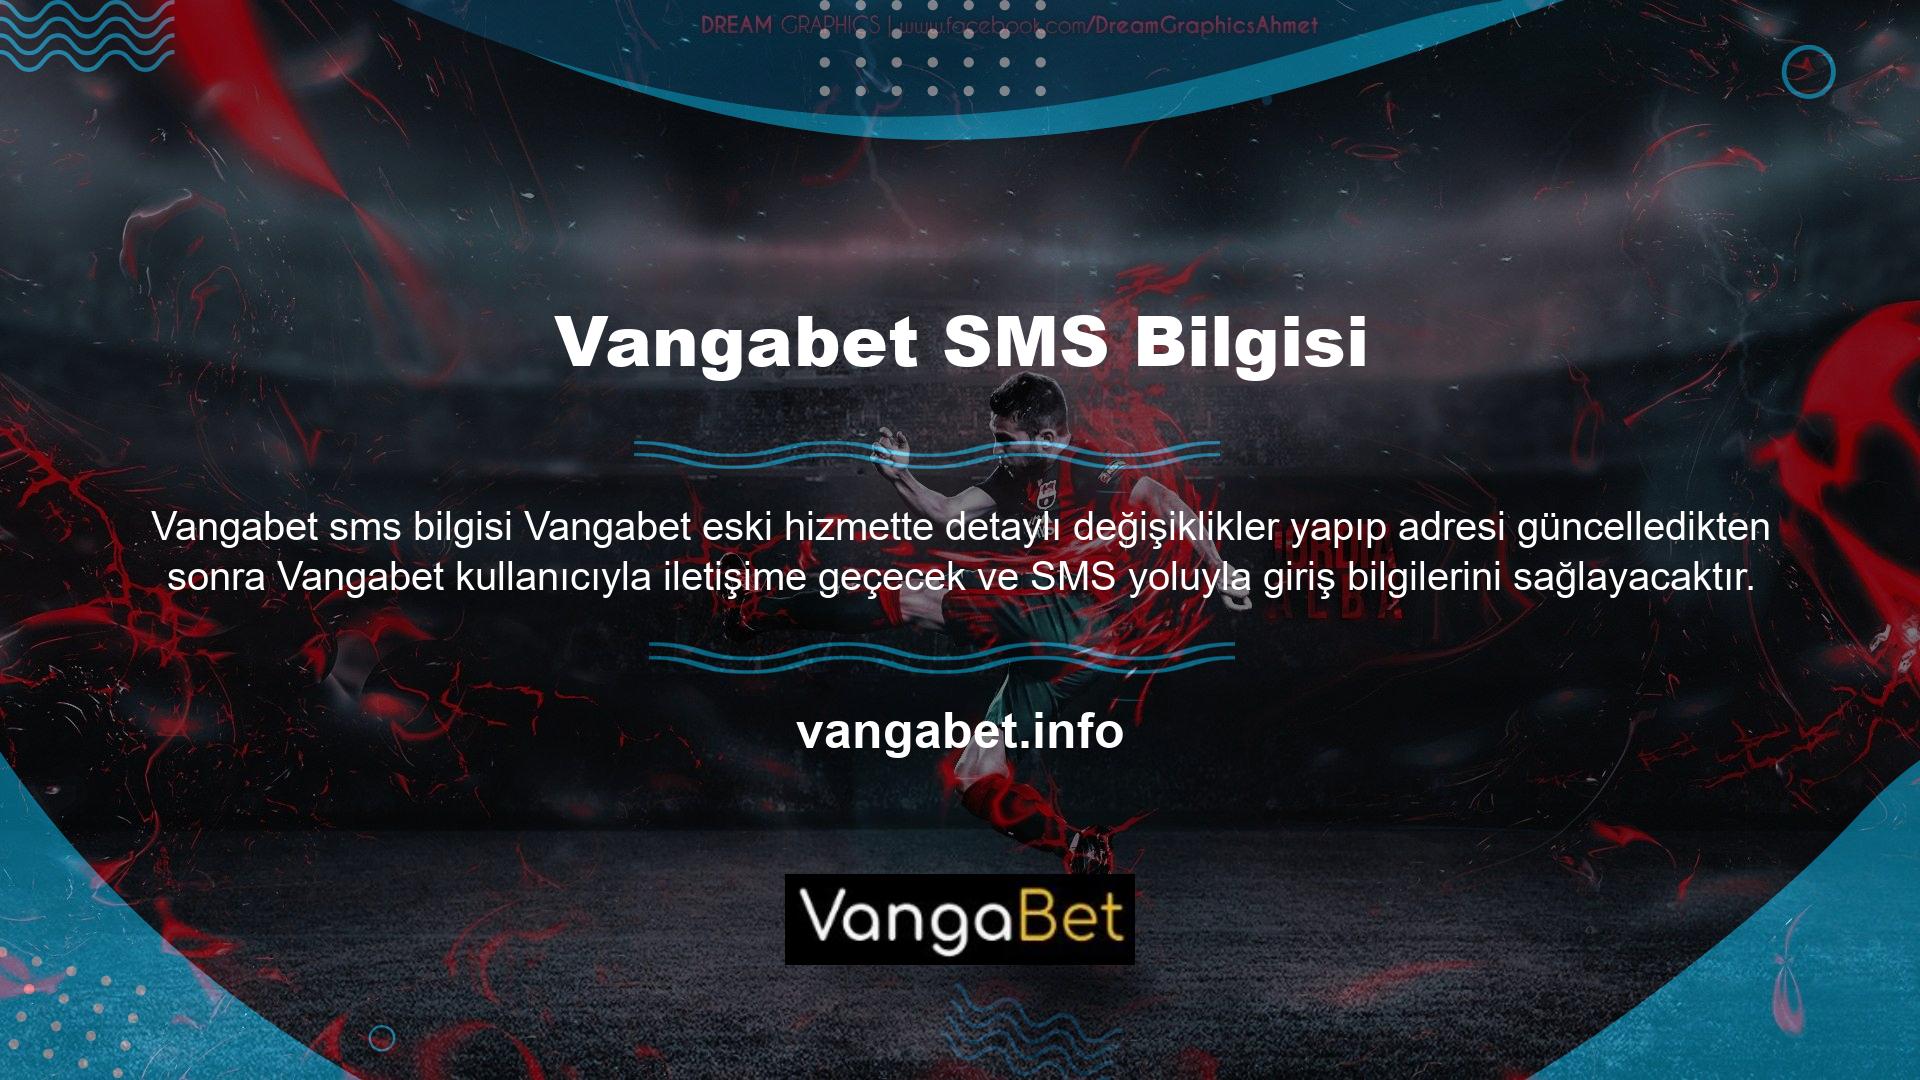 Diğer oyuncular herhangi bir belge sunmadan üyelik işlemini tamamlayarak Vangabet hesabı açabilirler